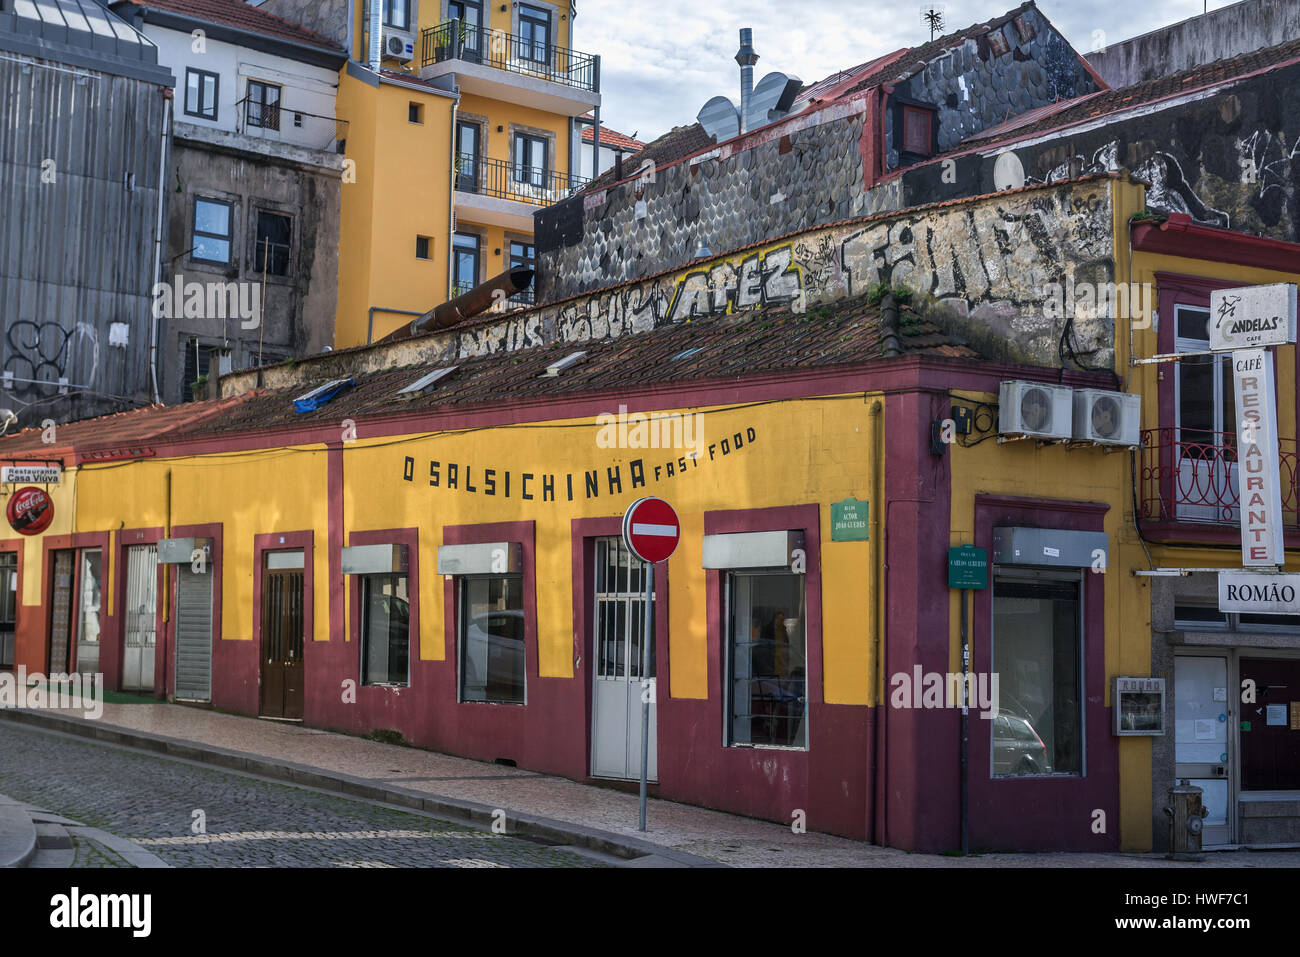 O Salsichinha bar in Vitoria parrocchia civile della città di Porto sulla Penisola Iberica, la seconda più grande città in Portogallo Foto Stock